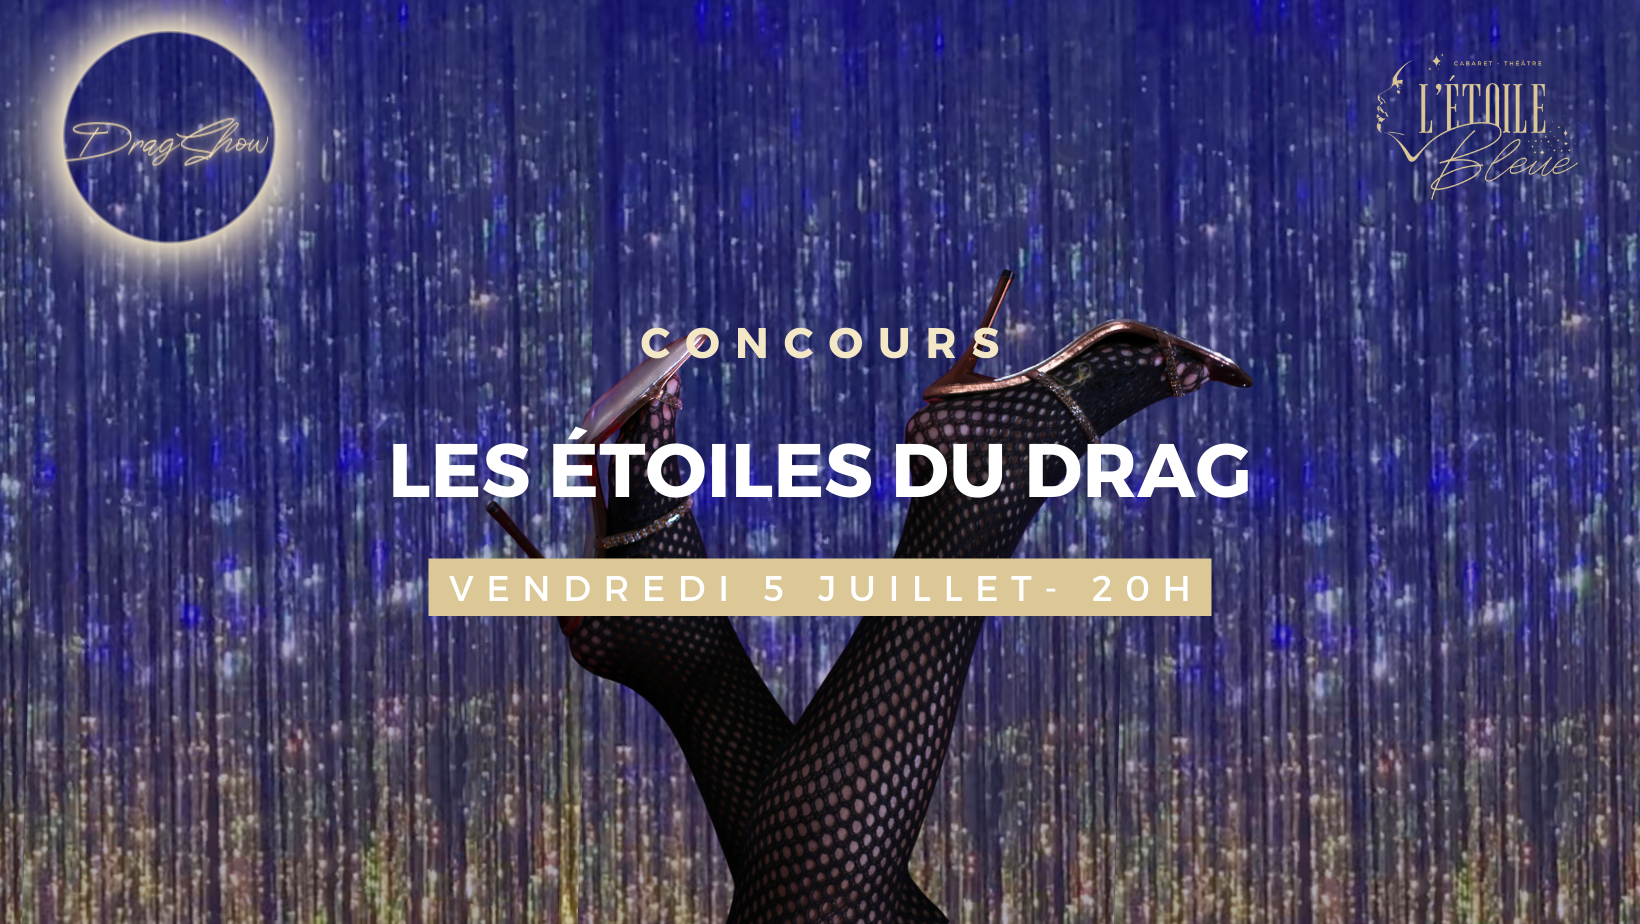 Concours scène ouverte drag show Marseille Cabaret-Théâtre L'étoile bleue